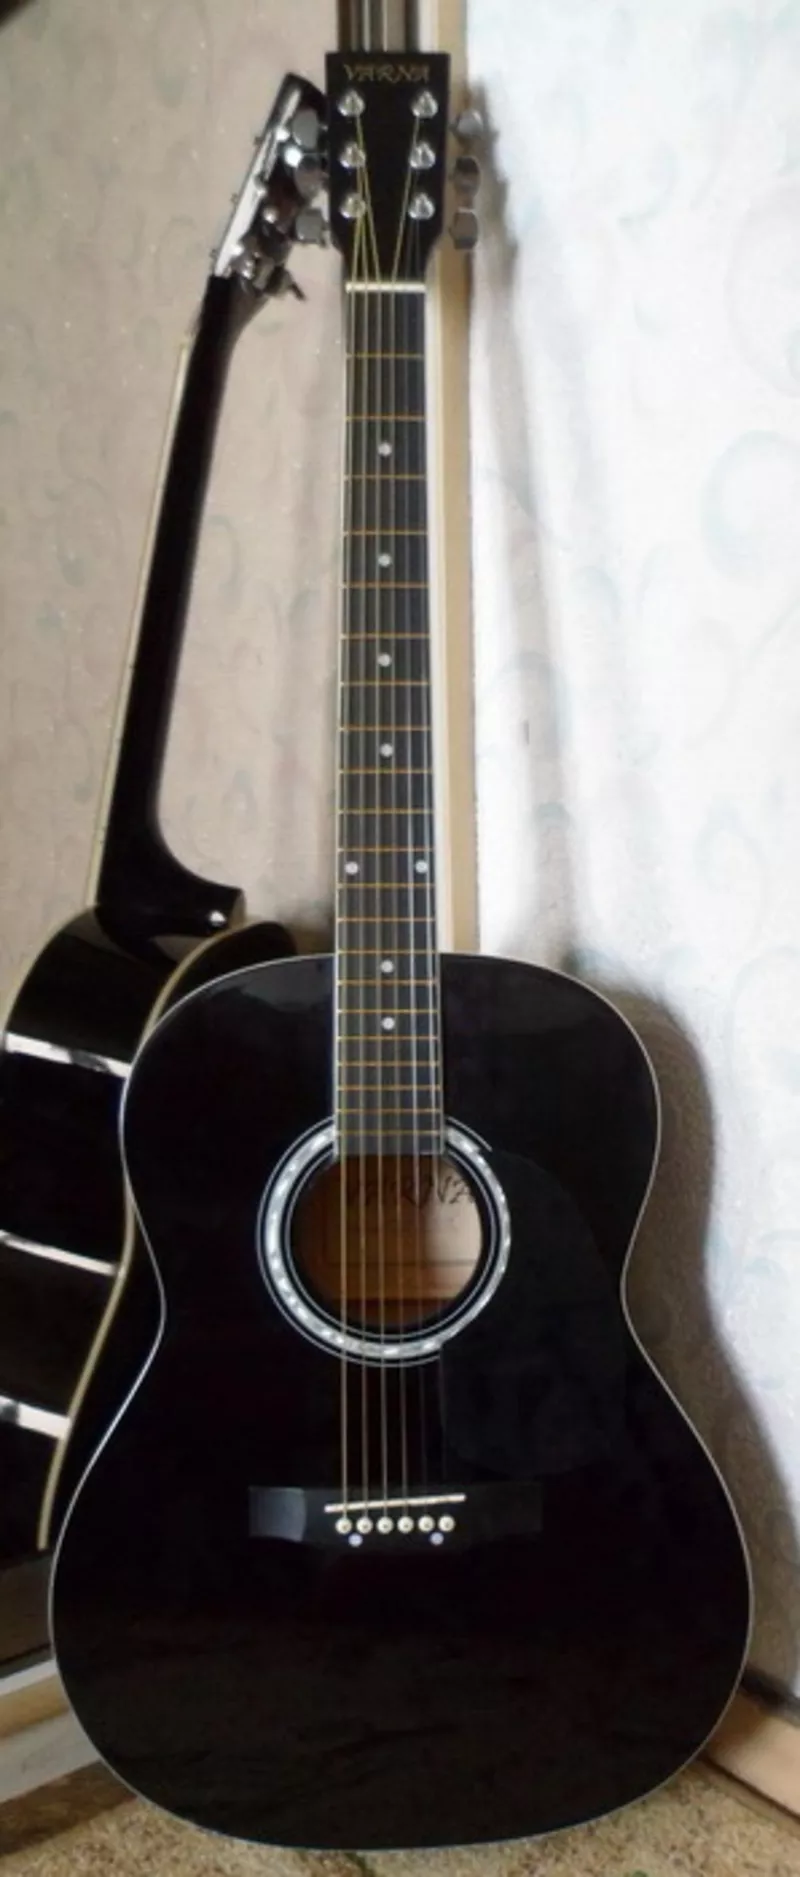 Продам акустическую гитару Varna Md-039, новая